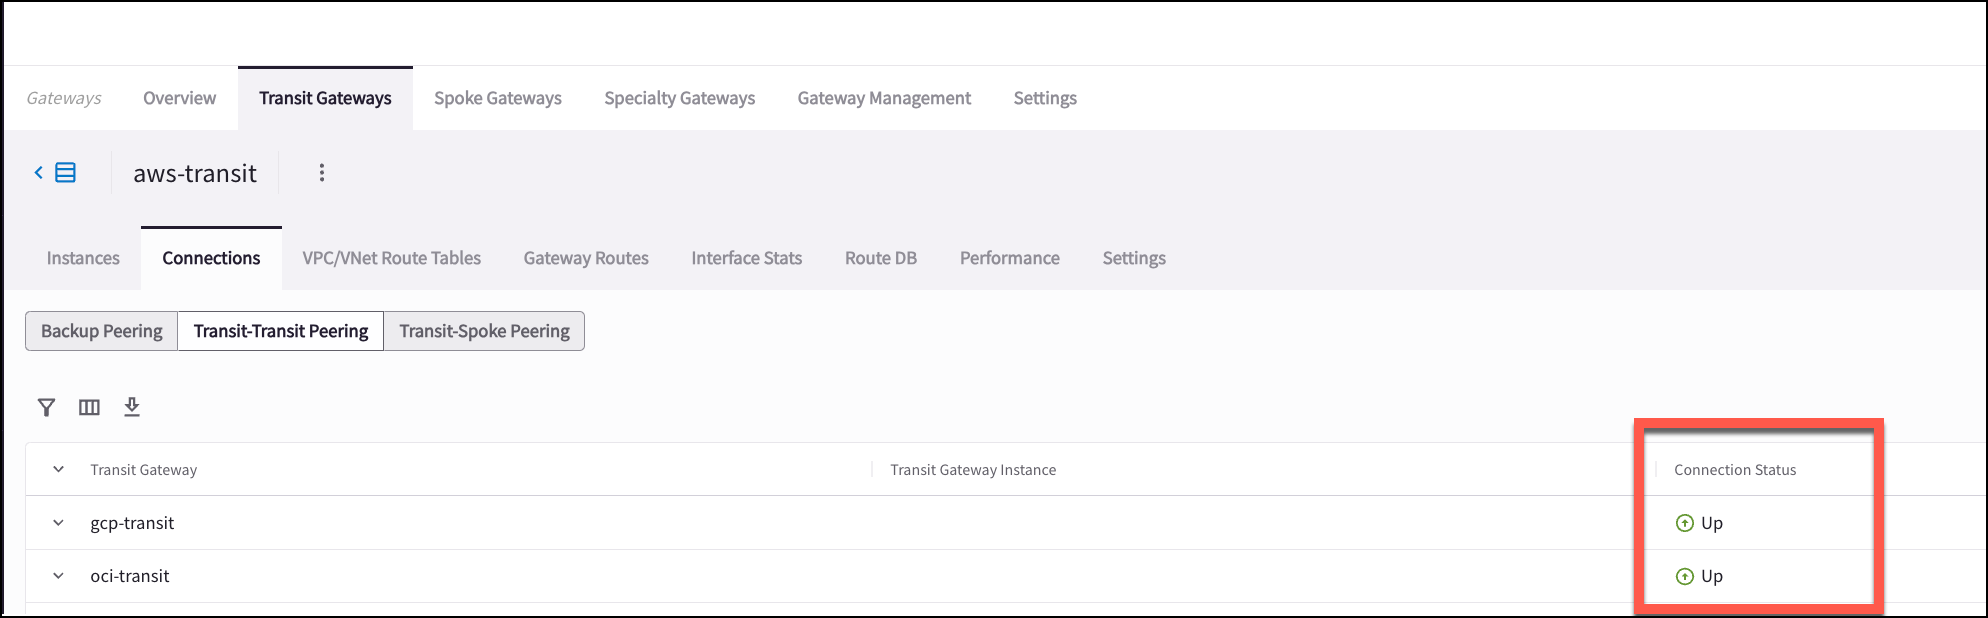 transit_gateway_peering_status